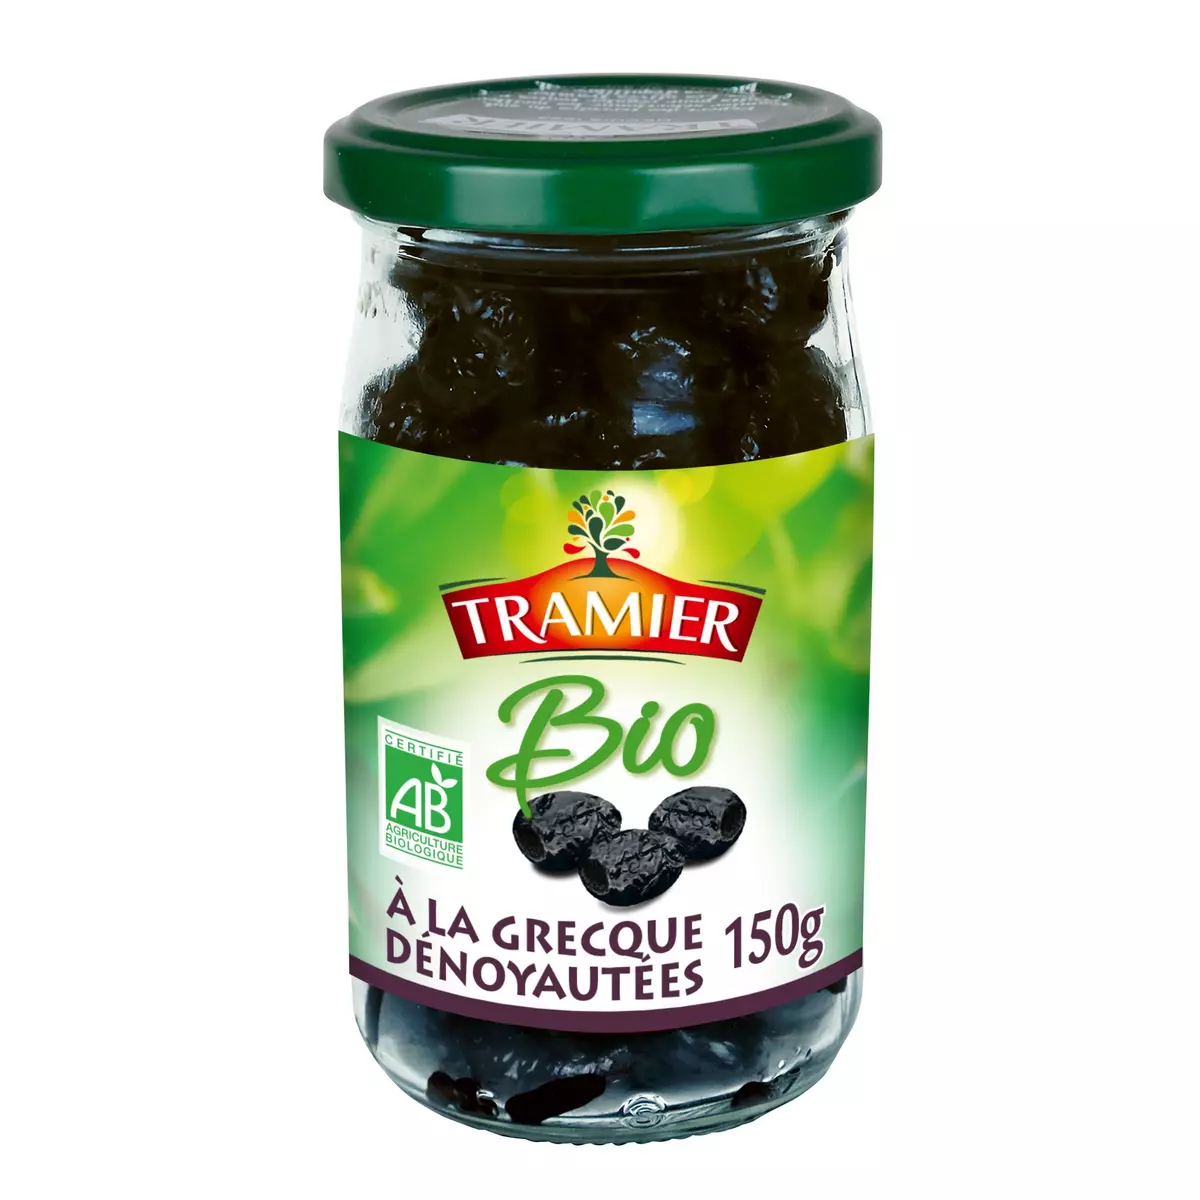 TRAMIER Olives noires à la Grecque dénoyautées bio 150g